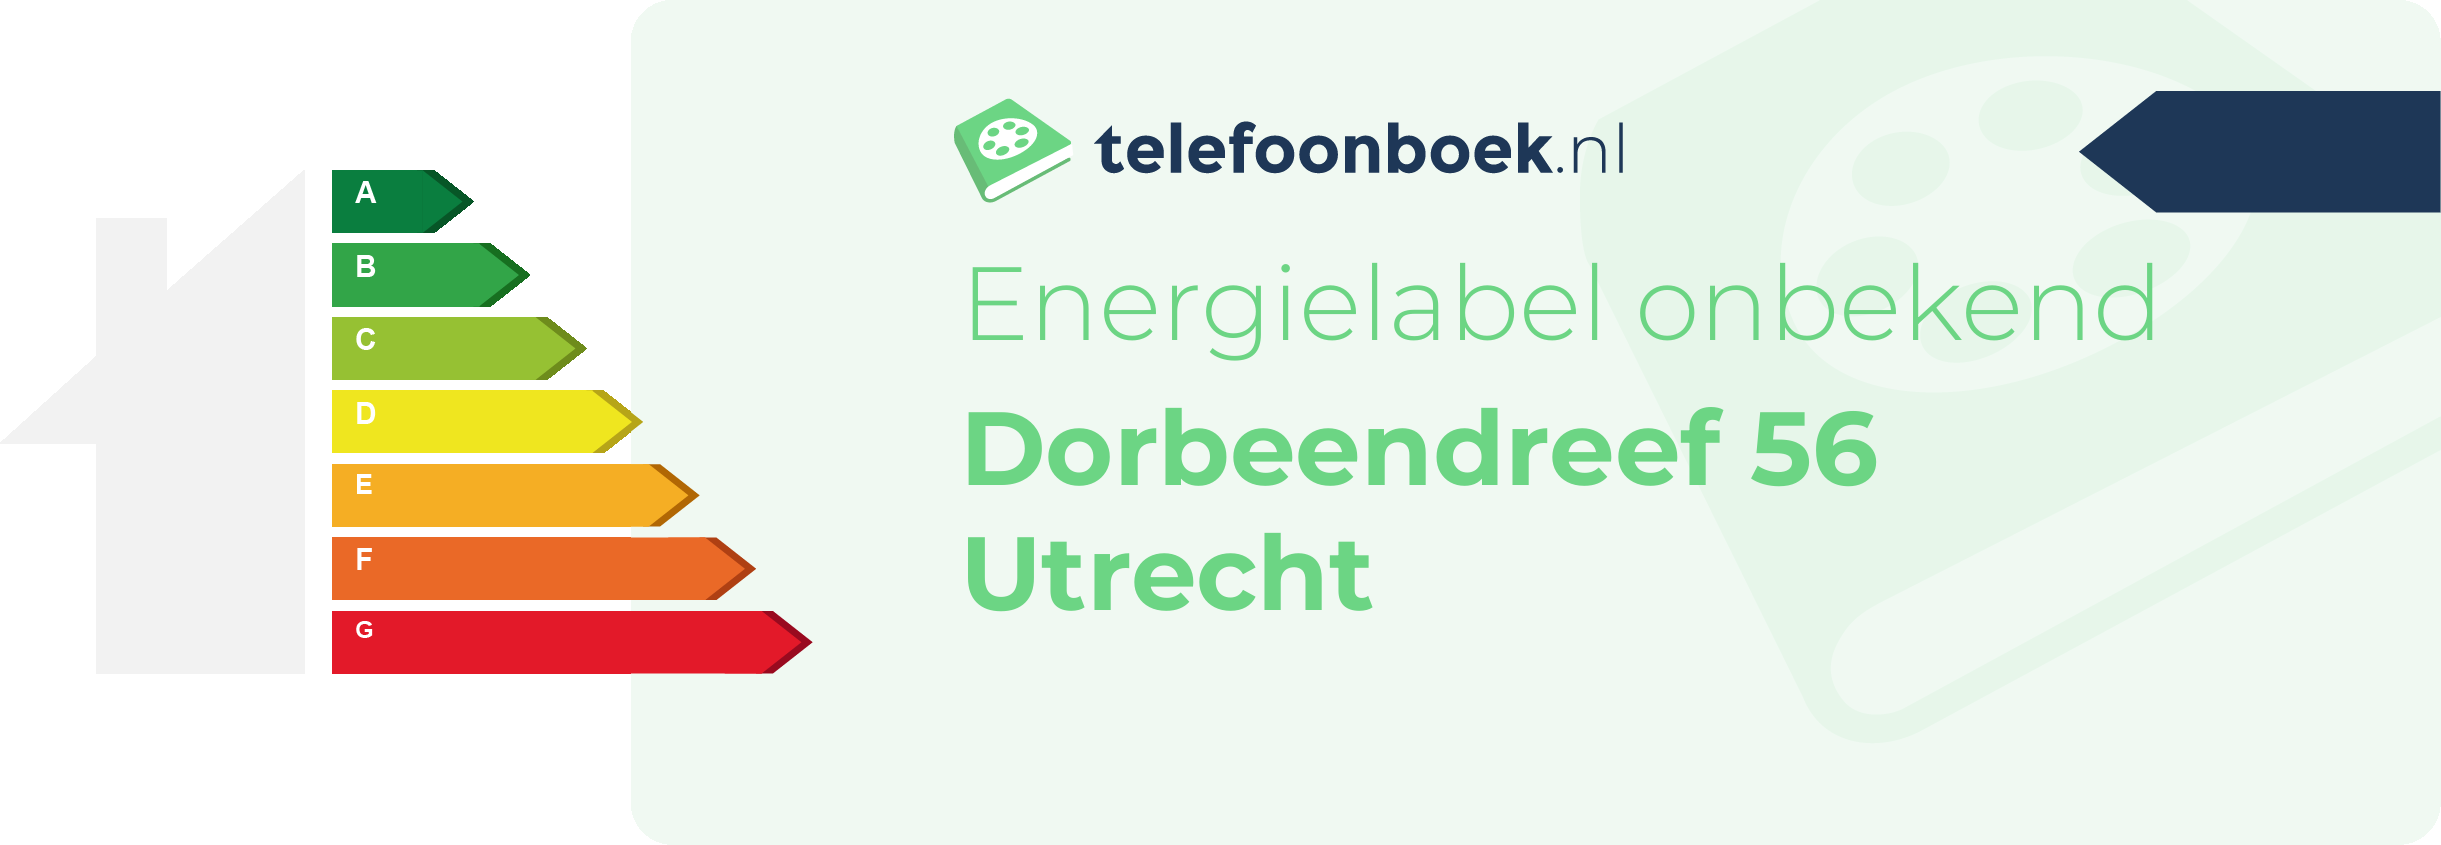 Energielabel Dorbeendreef 56 Utrecht